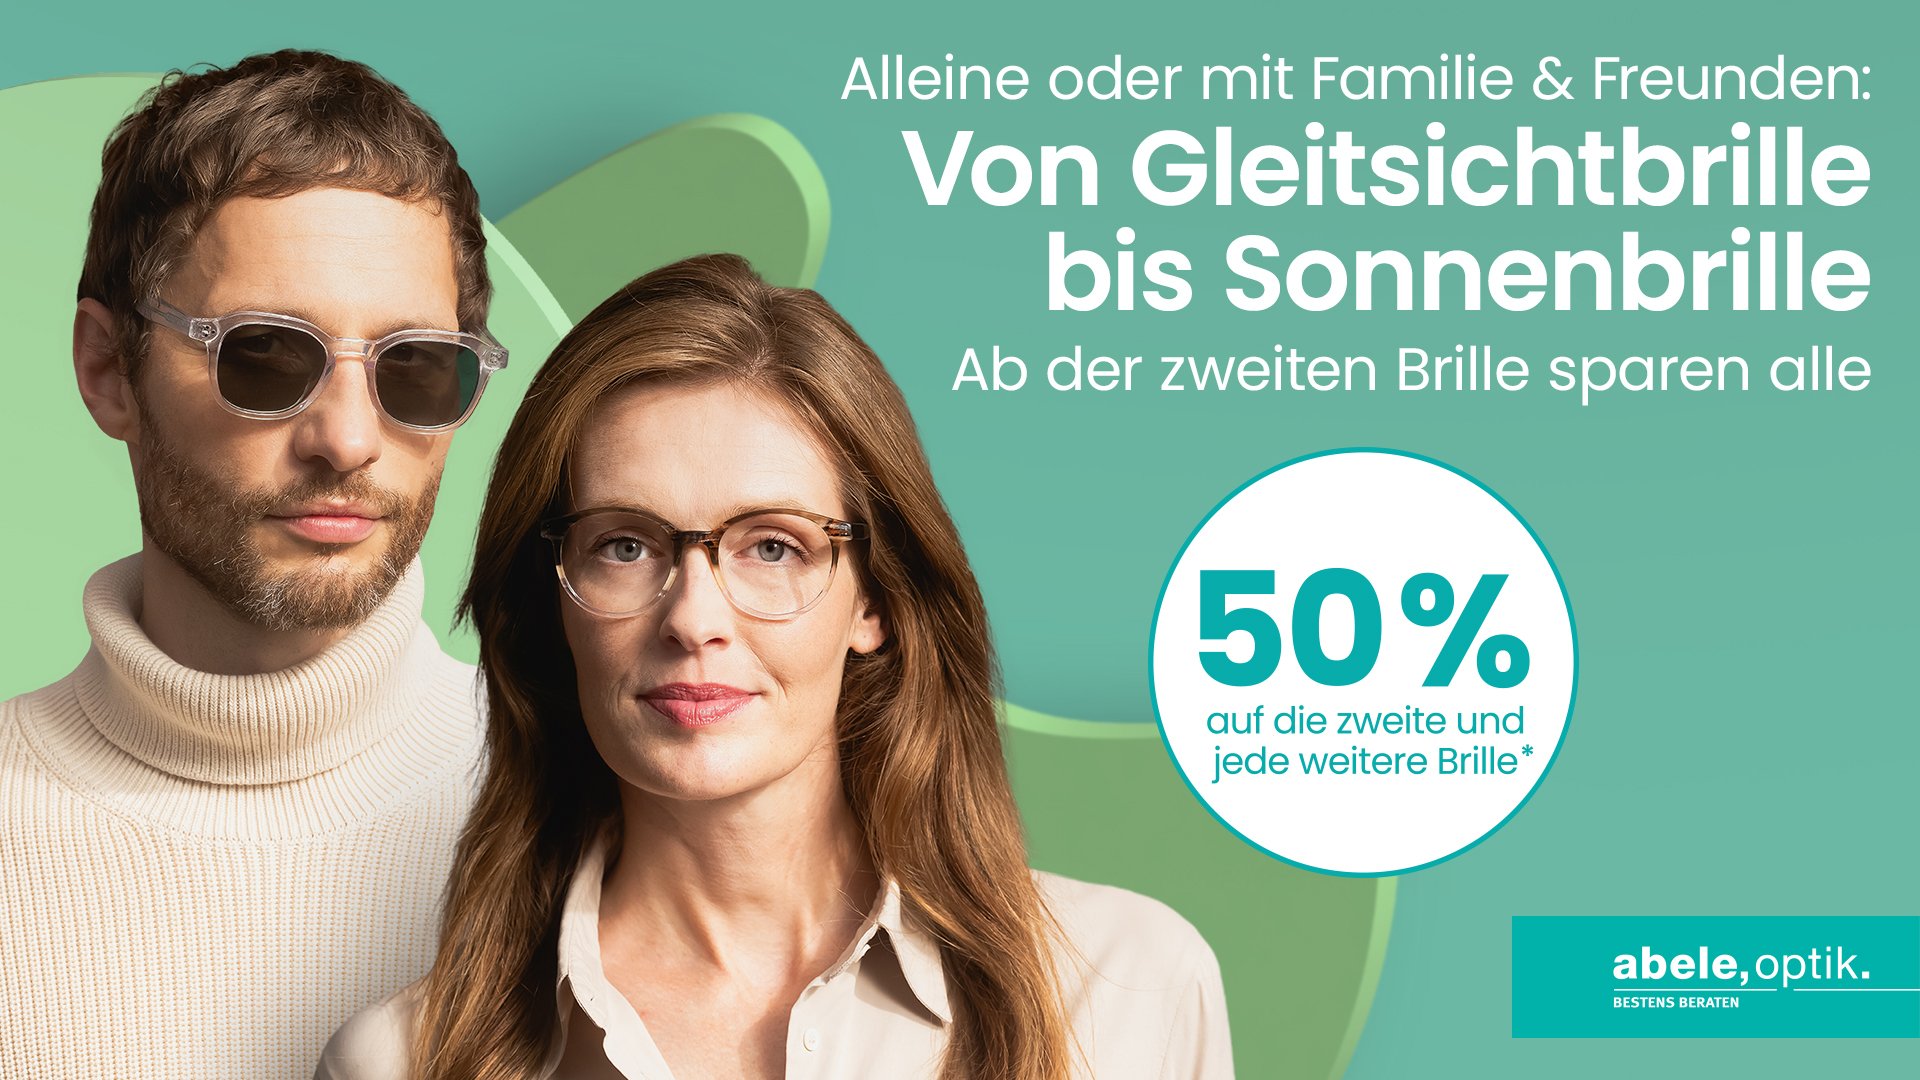 Zu sehen sind eine Frau mit Korrektionsbrille und ein Man mit Sonnenbrille vor grün changierendem Hintergrund